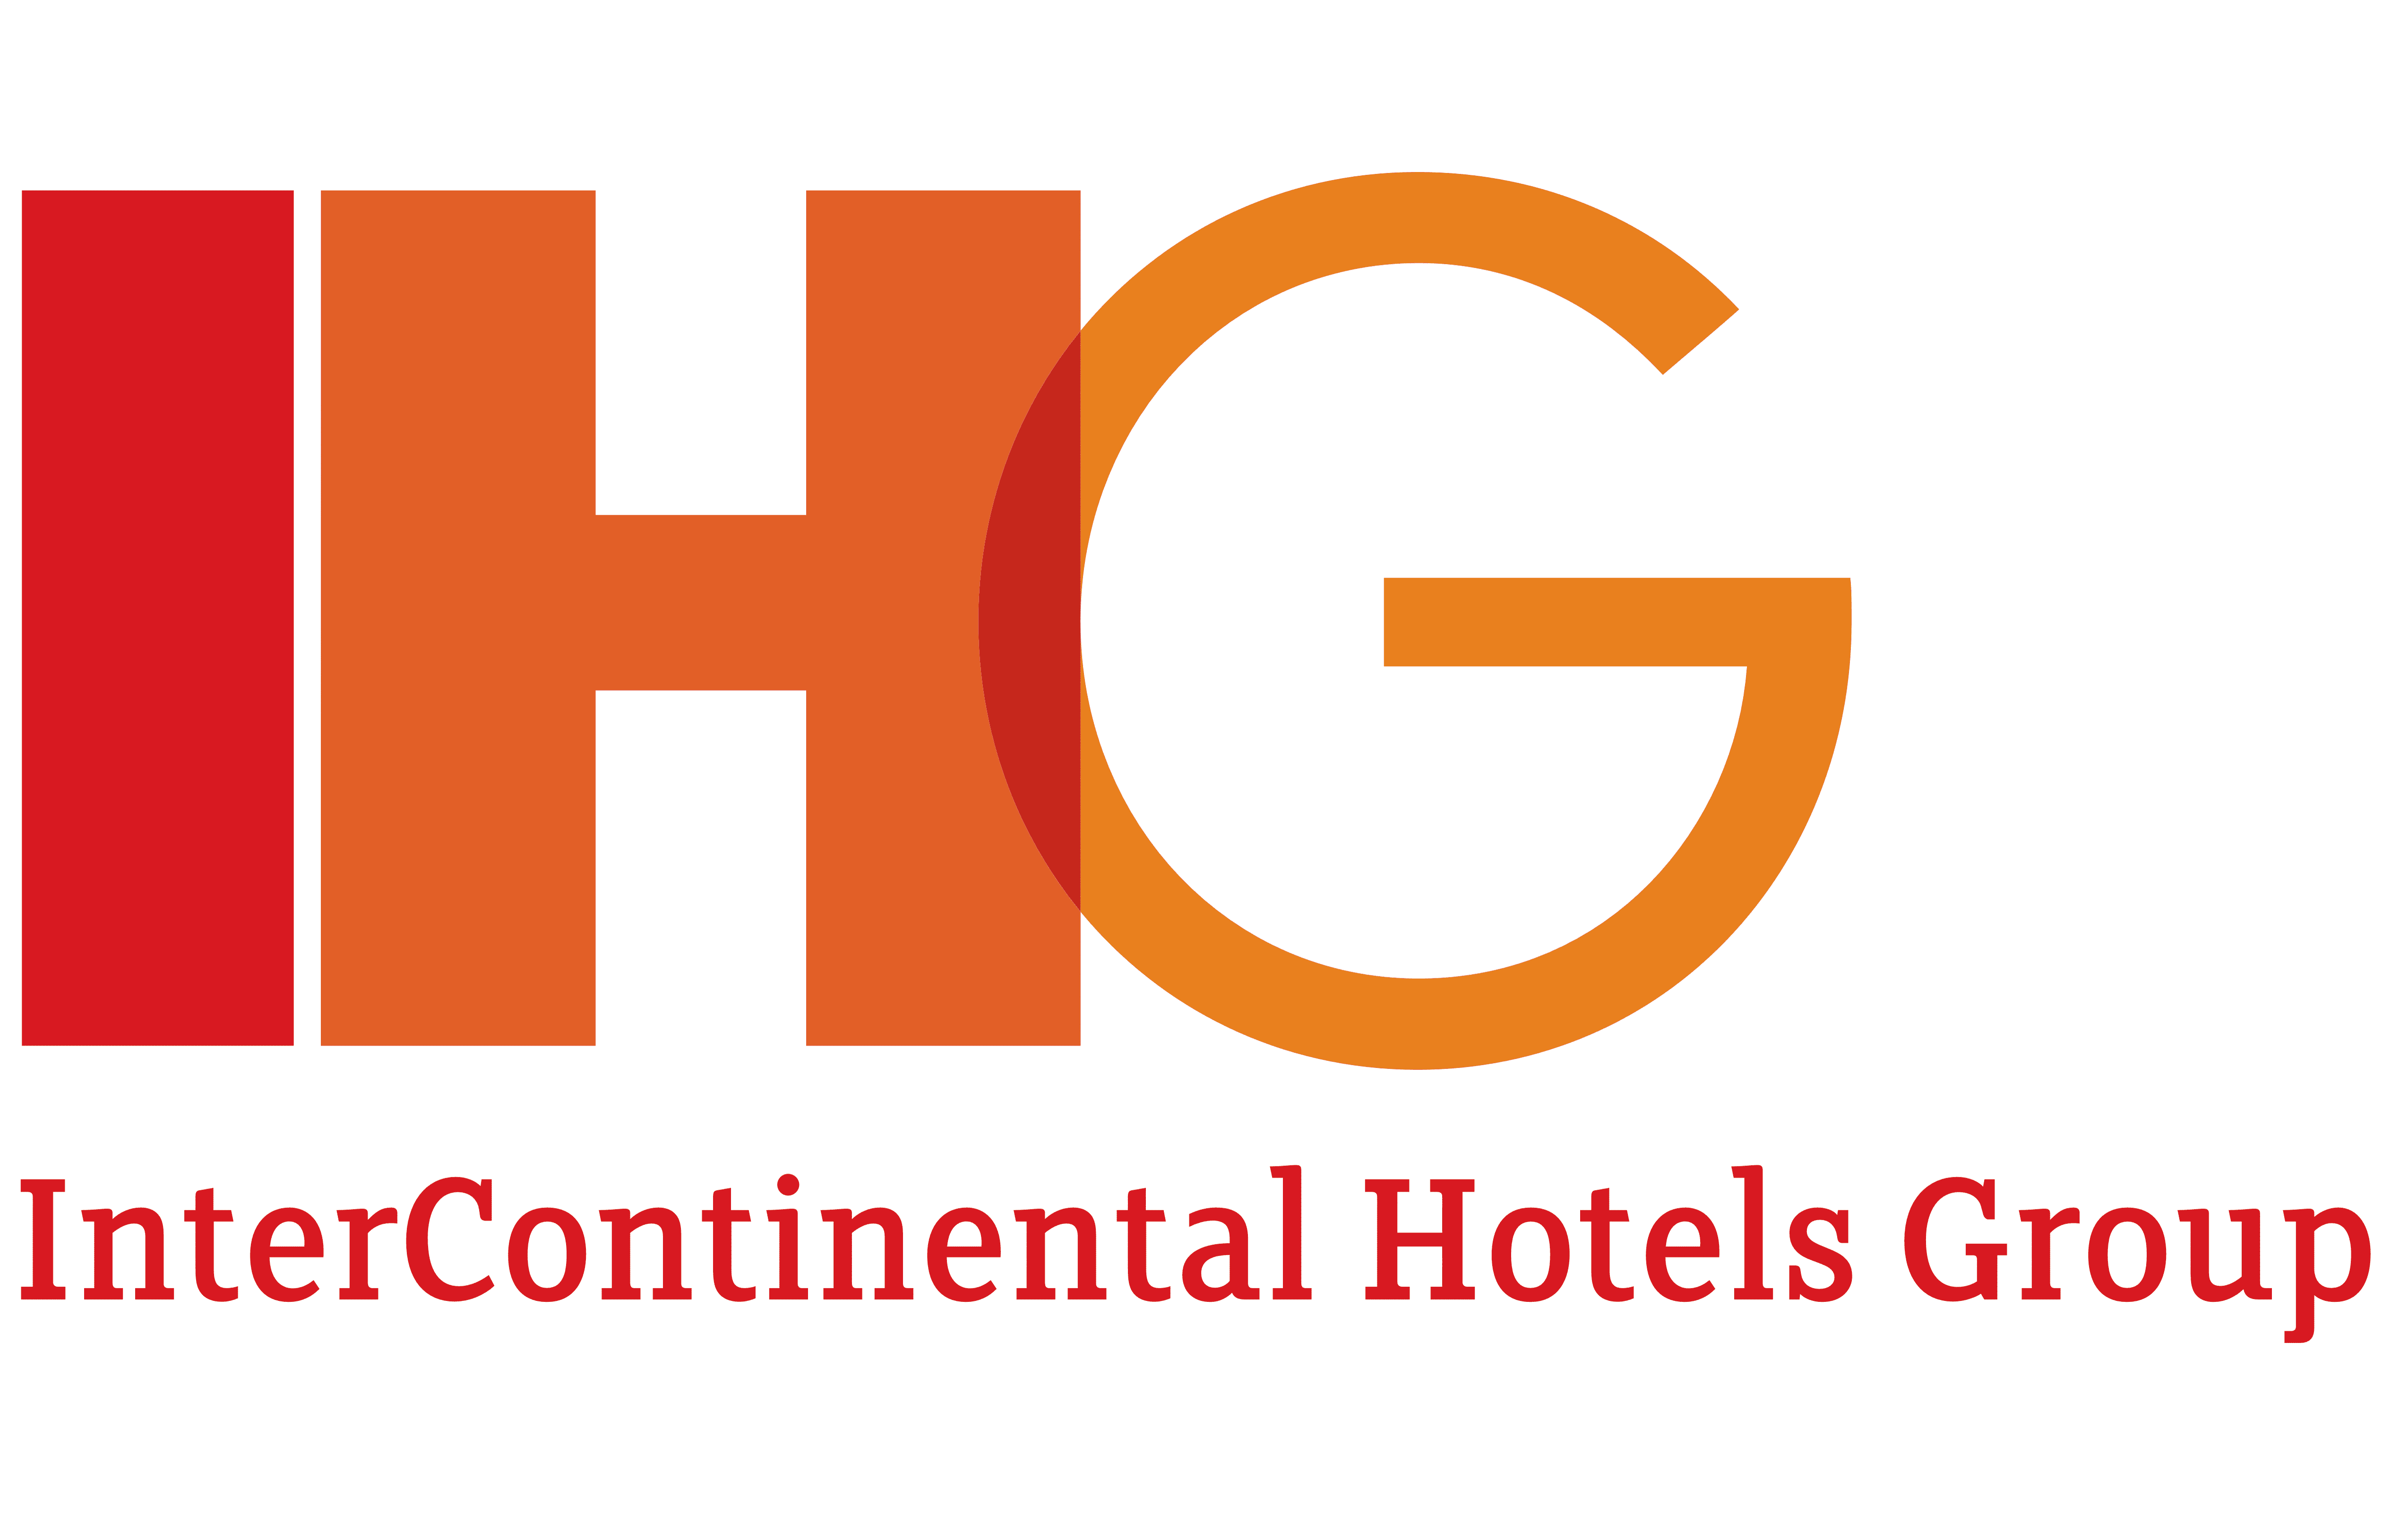 Hotel Group Logos